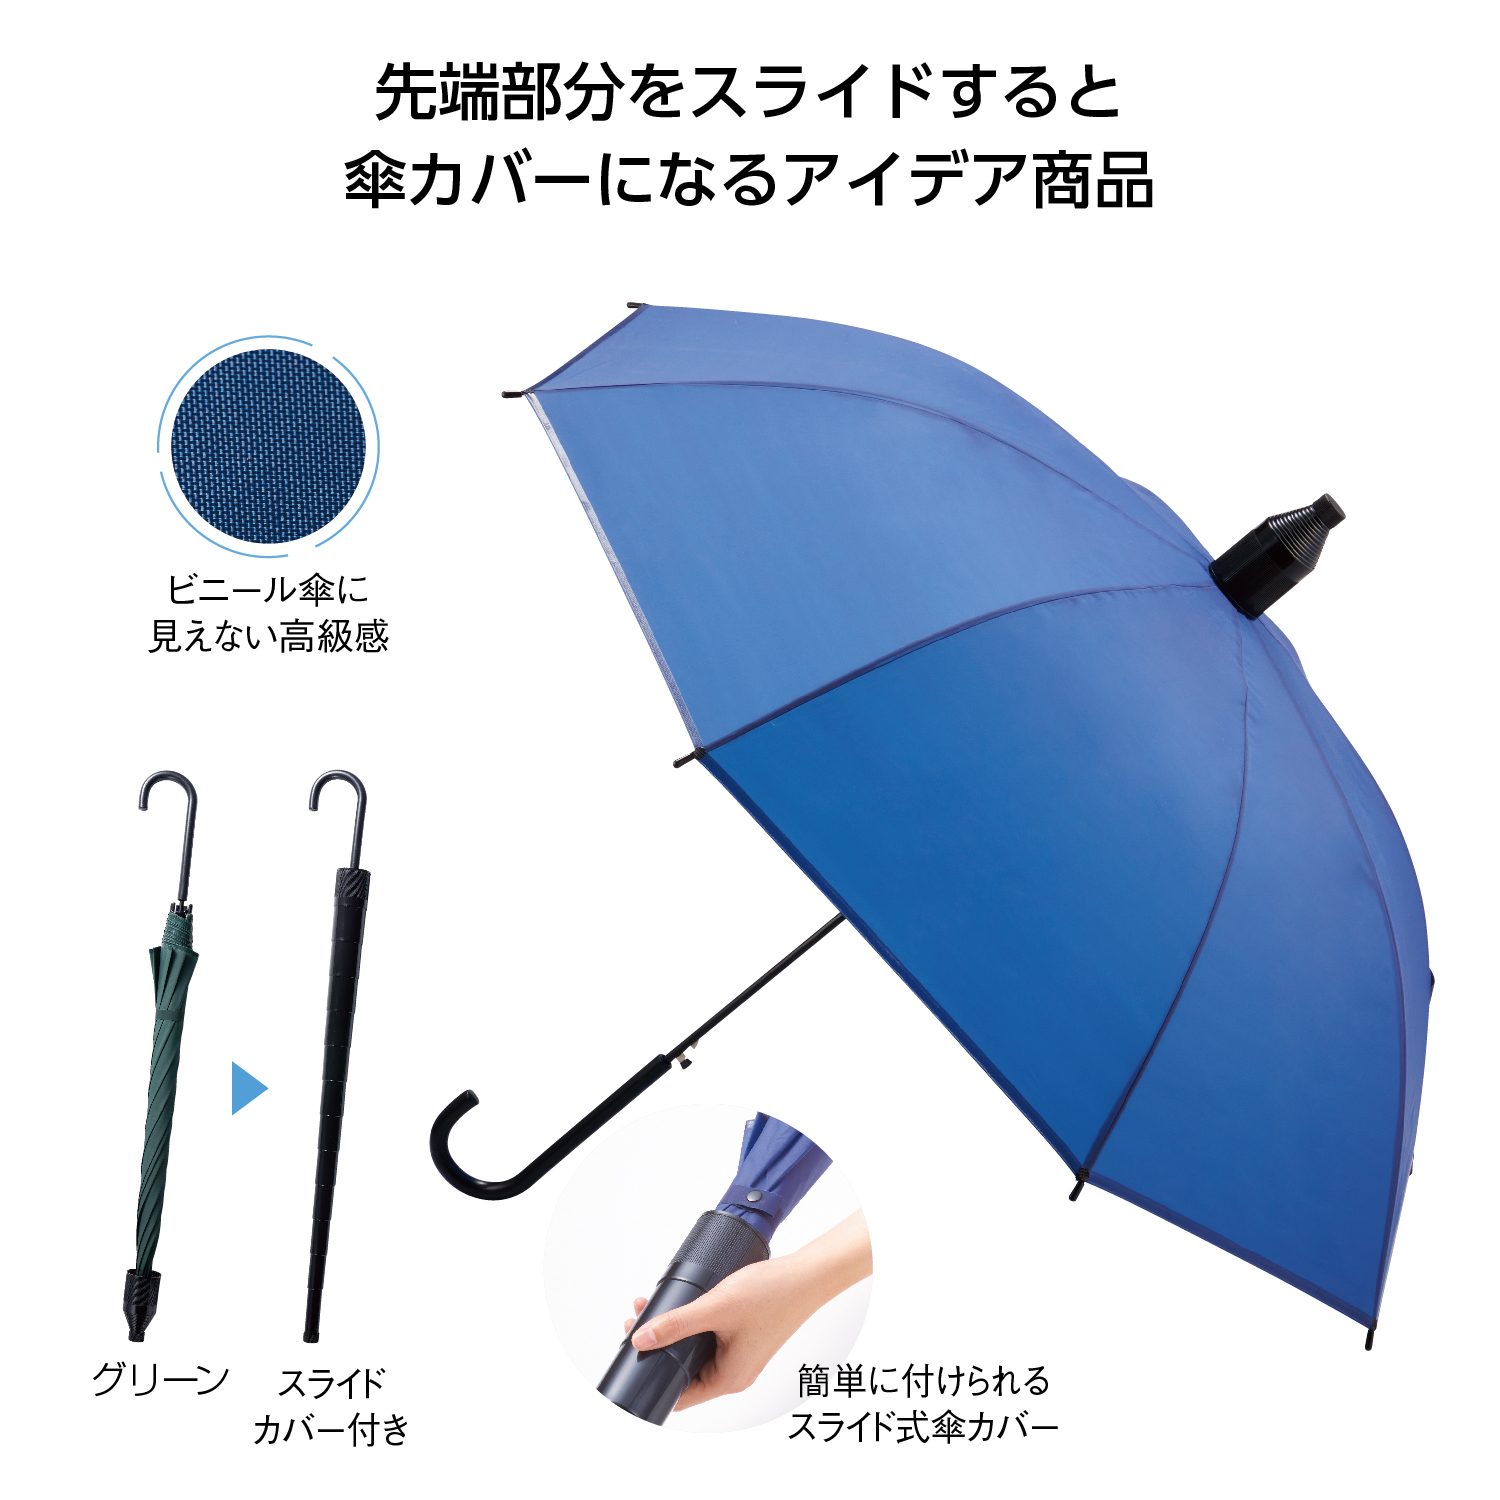 ｴﾝﾎﾞｽﾋﾞﾆｰﾙｽﾗｲﾄﾞｶﾊﾞｰ付ｼﾞｬﾝﾌﾟ傘